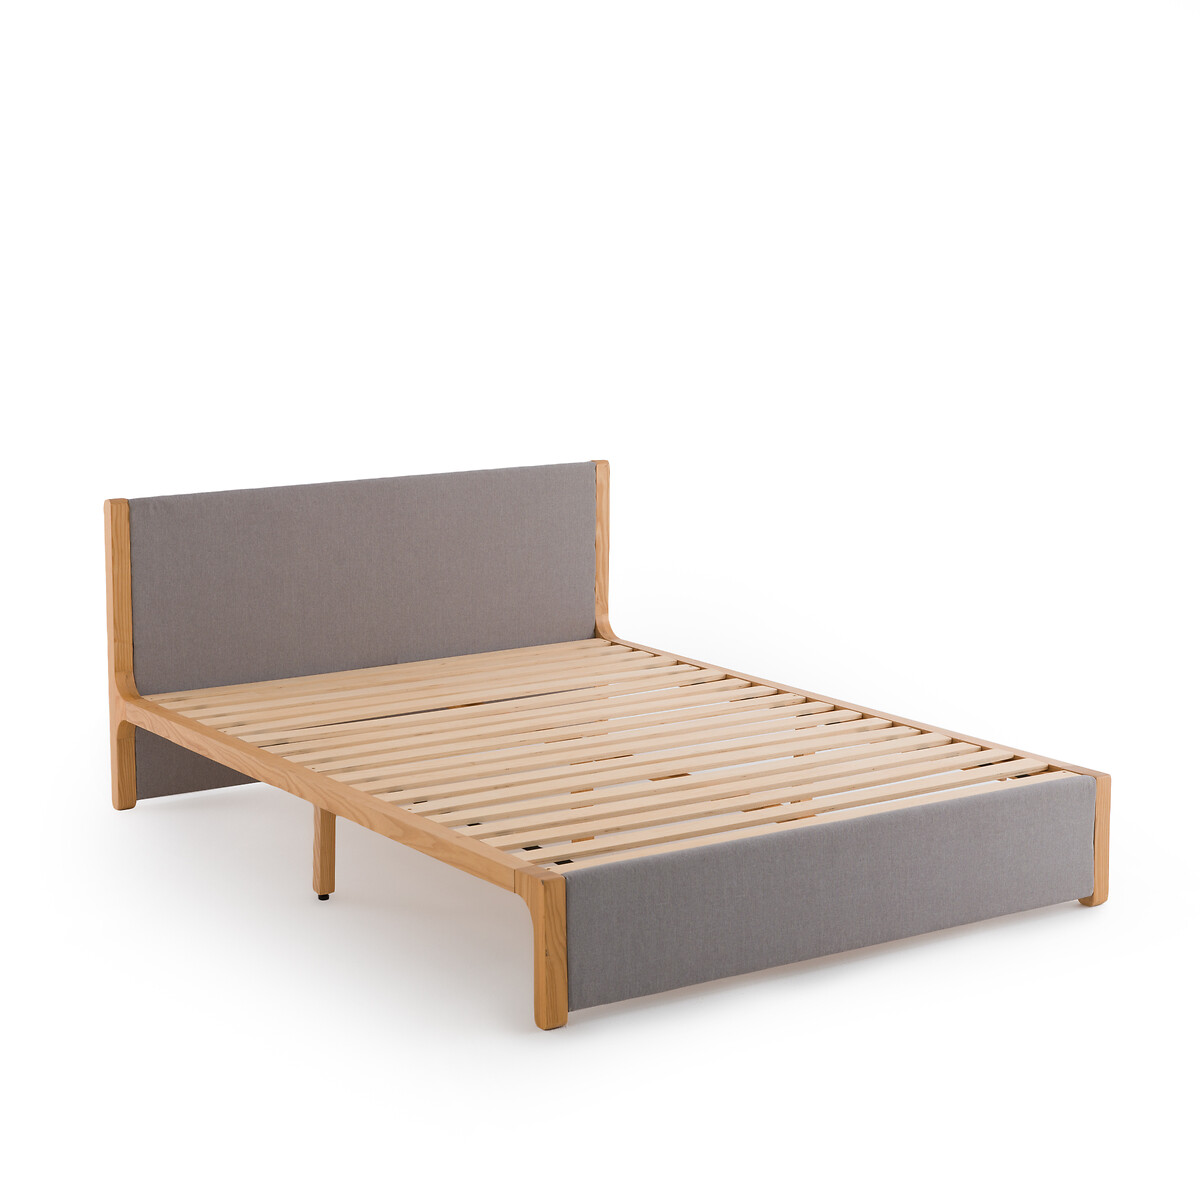 Кровать La Redoute С реечным дном ELORI 160 x 200 см серый, размер 160 x 200 см - фото 3